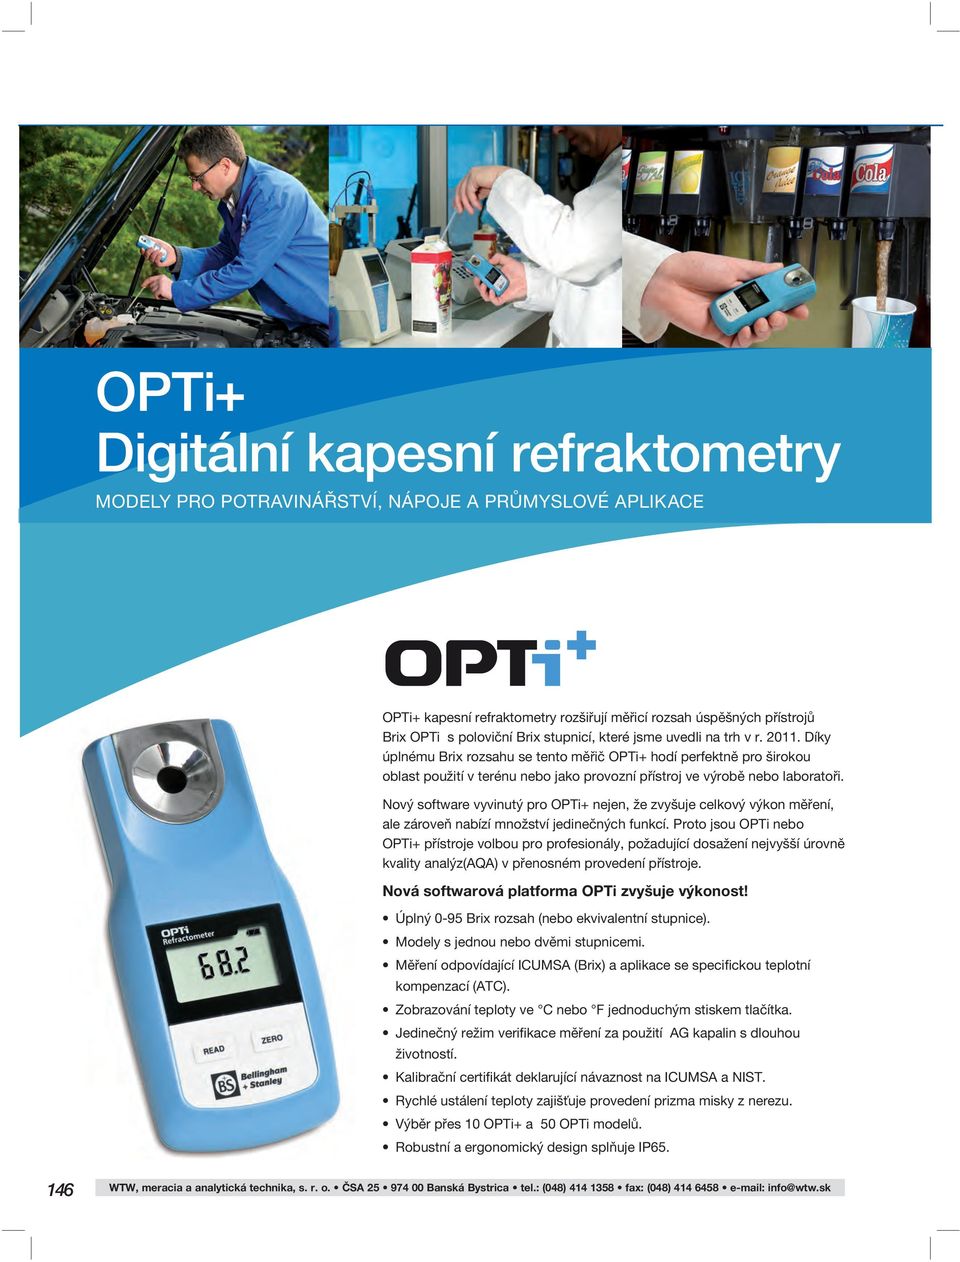 Nový software vyvinutý pro OPTi+ nejen, že zvyšuje celkový výkon měření, ale zároveň nabízí množství jedinečných funkcí.